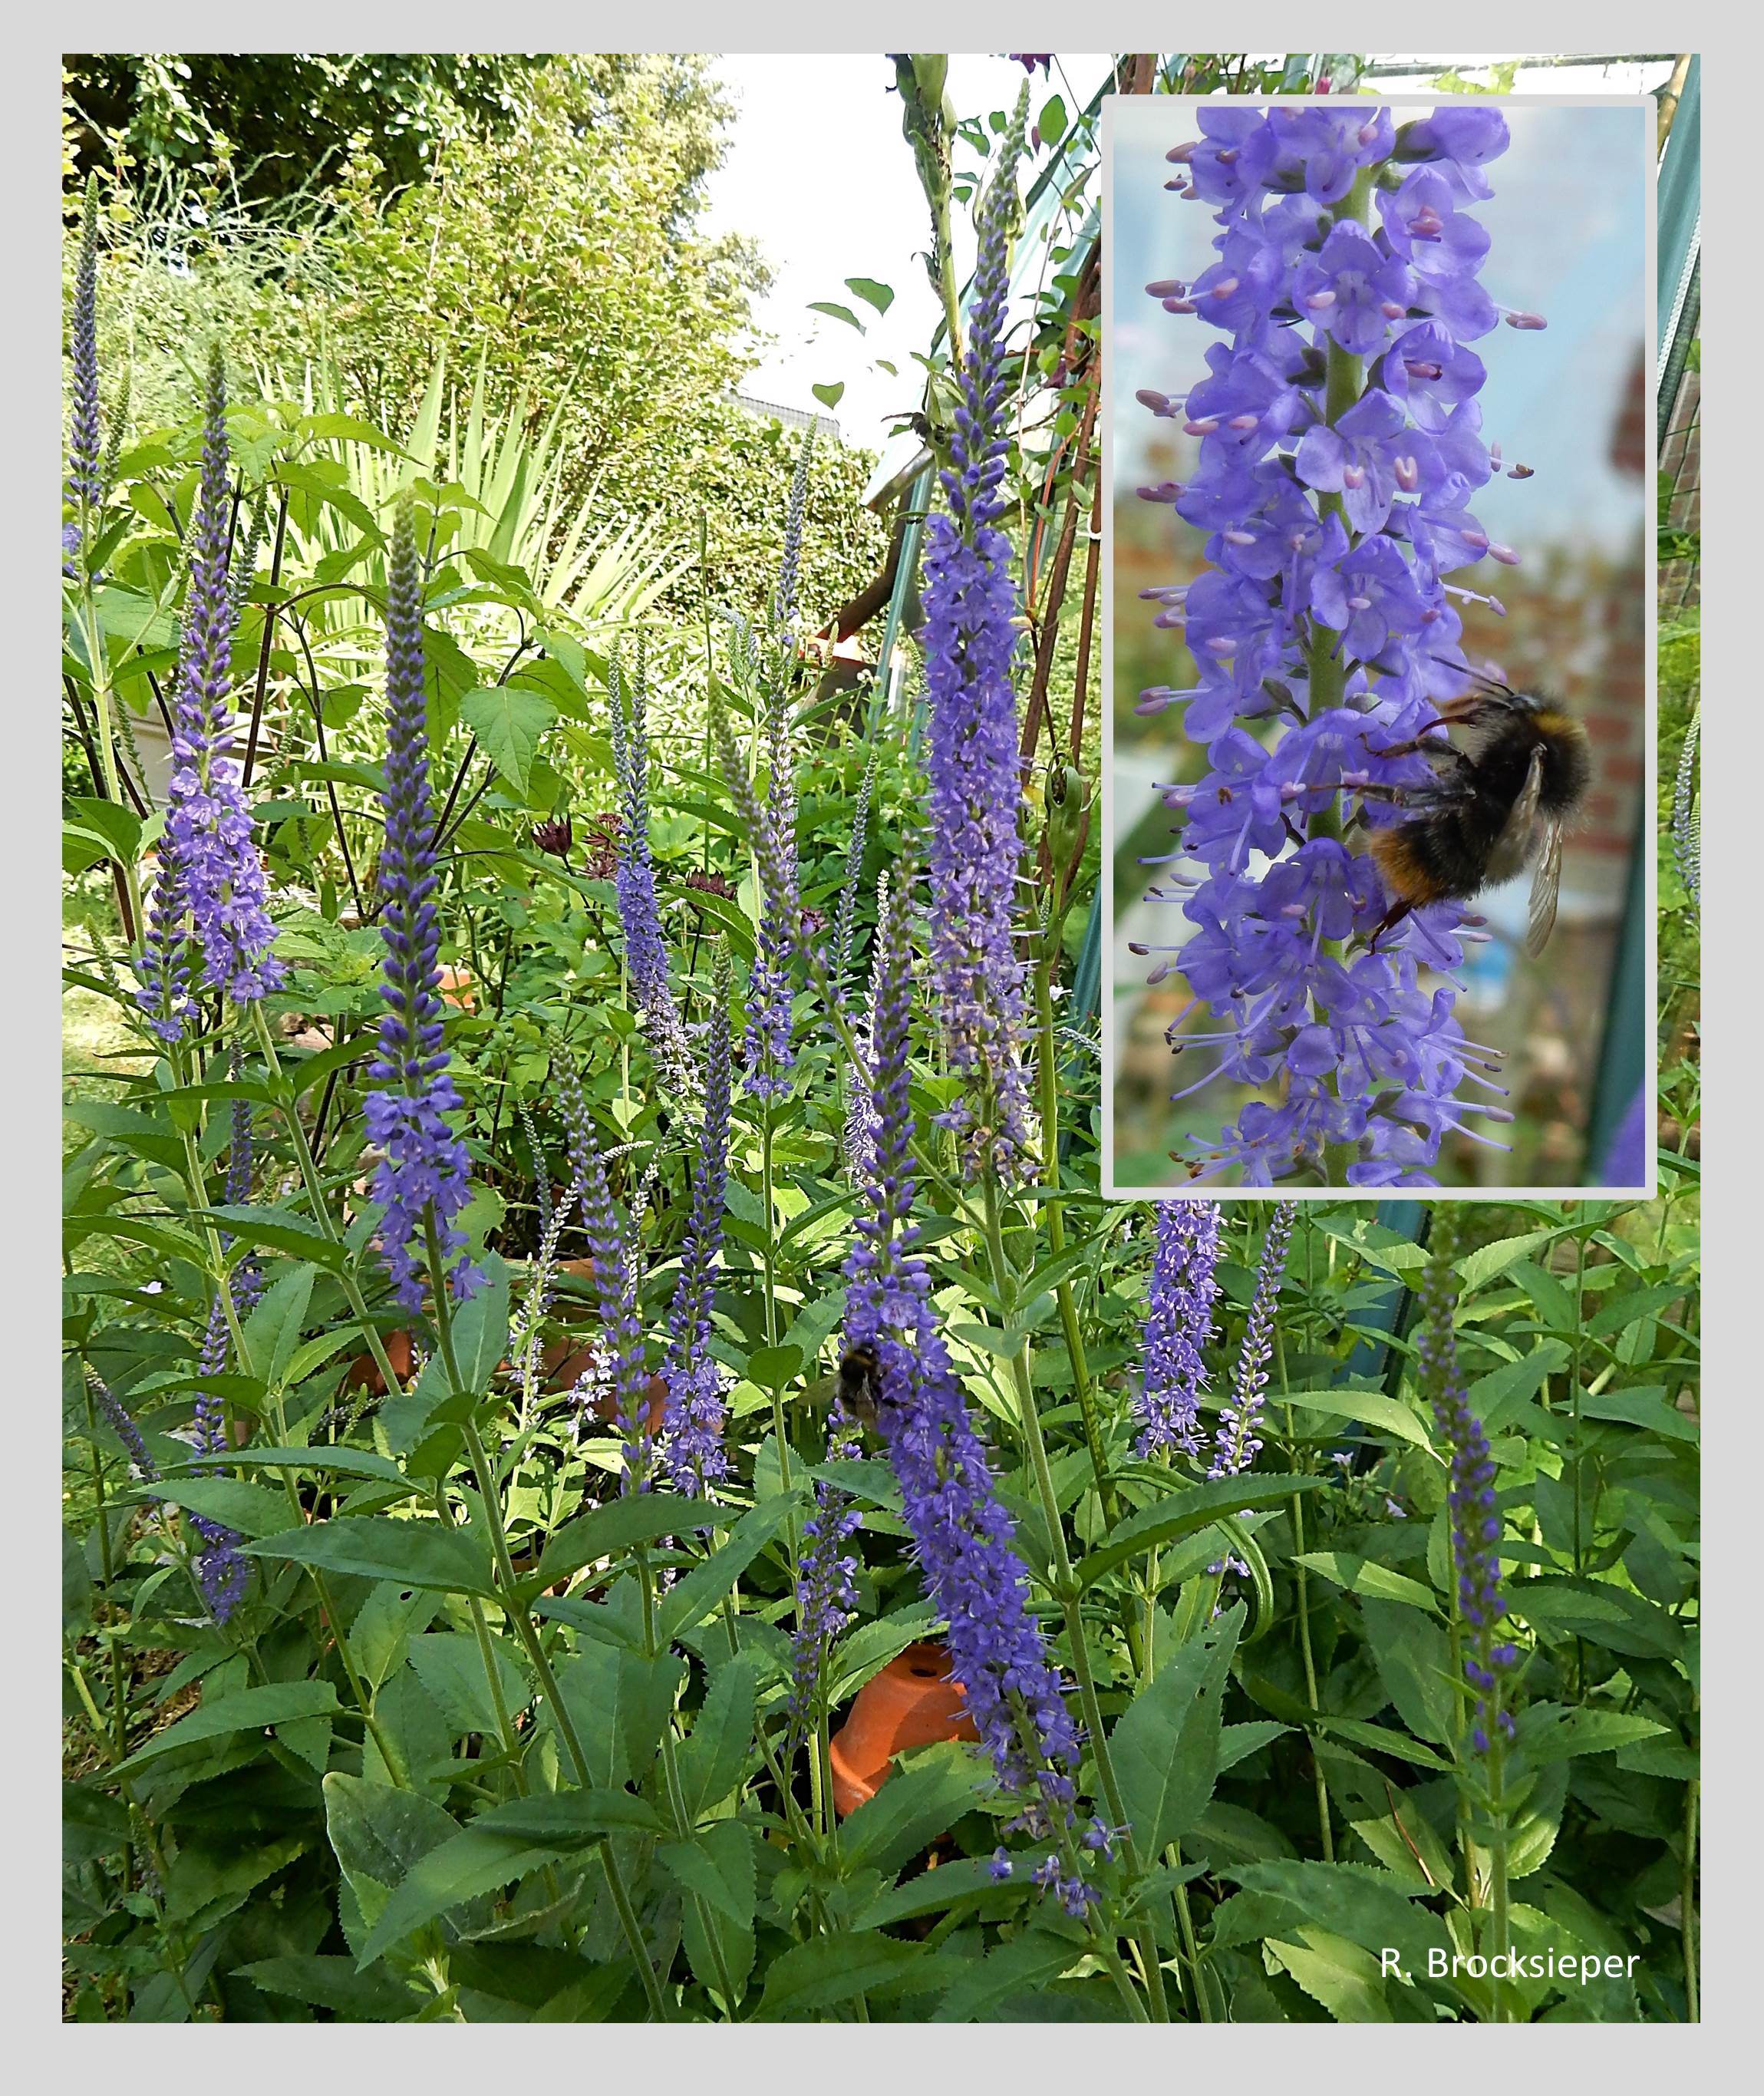 Ehrenpreis (Veronica longifolia) ist ein Spätblüher unter den Ehrenpreis-Arten. Im Juli / August erfreut es Insekten mit Nektar und Pollen und sollte in keinem naturnahen Garten fehlen (kleines Bild Wiesenhummel). 